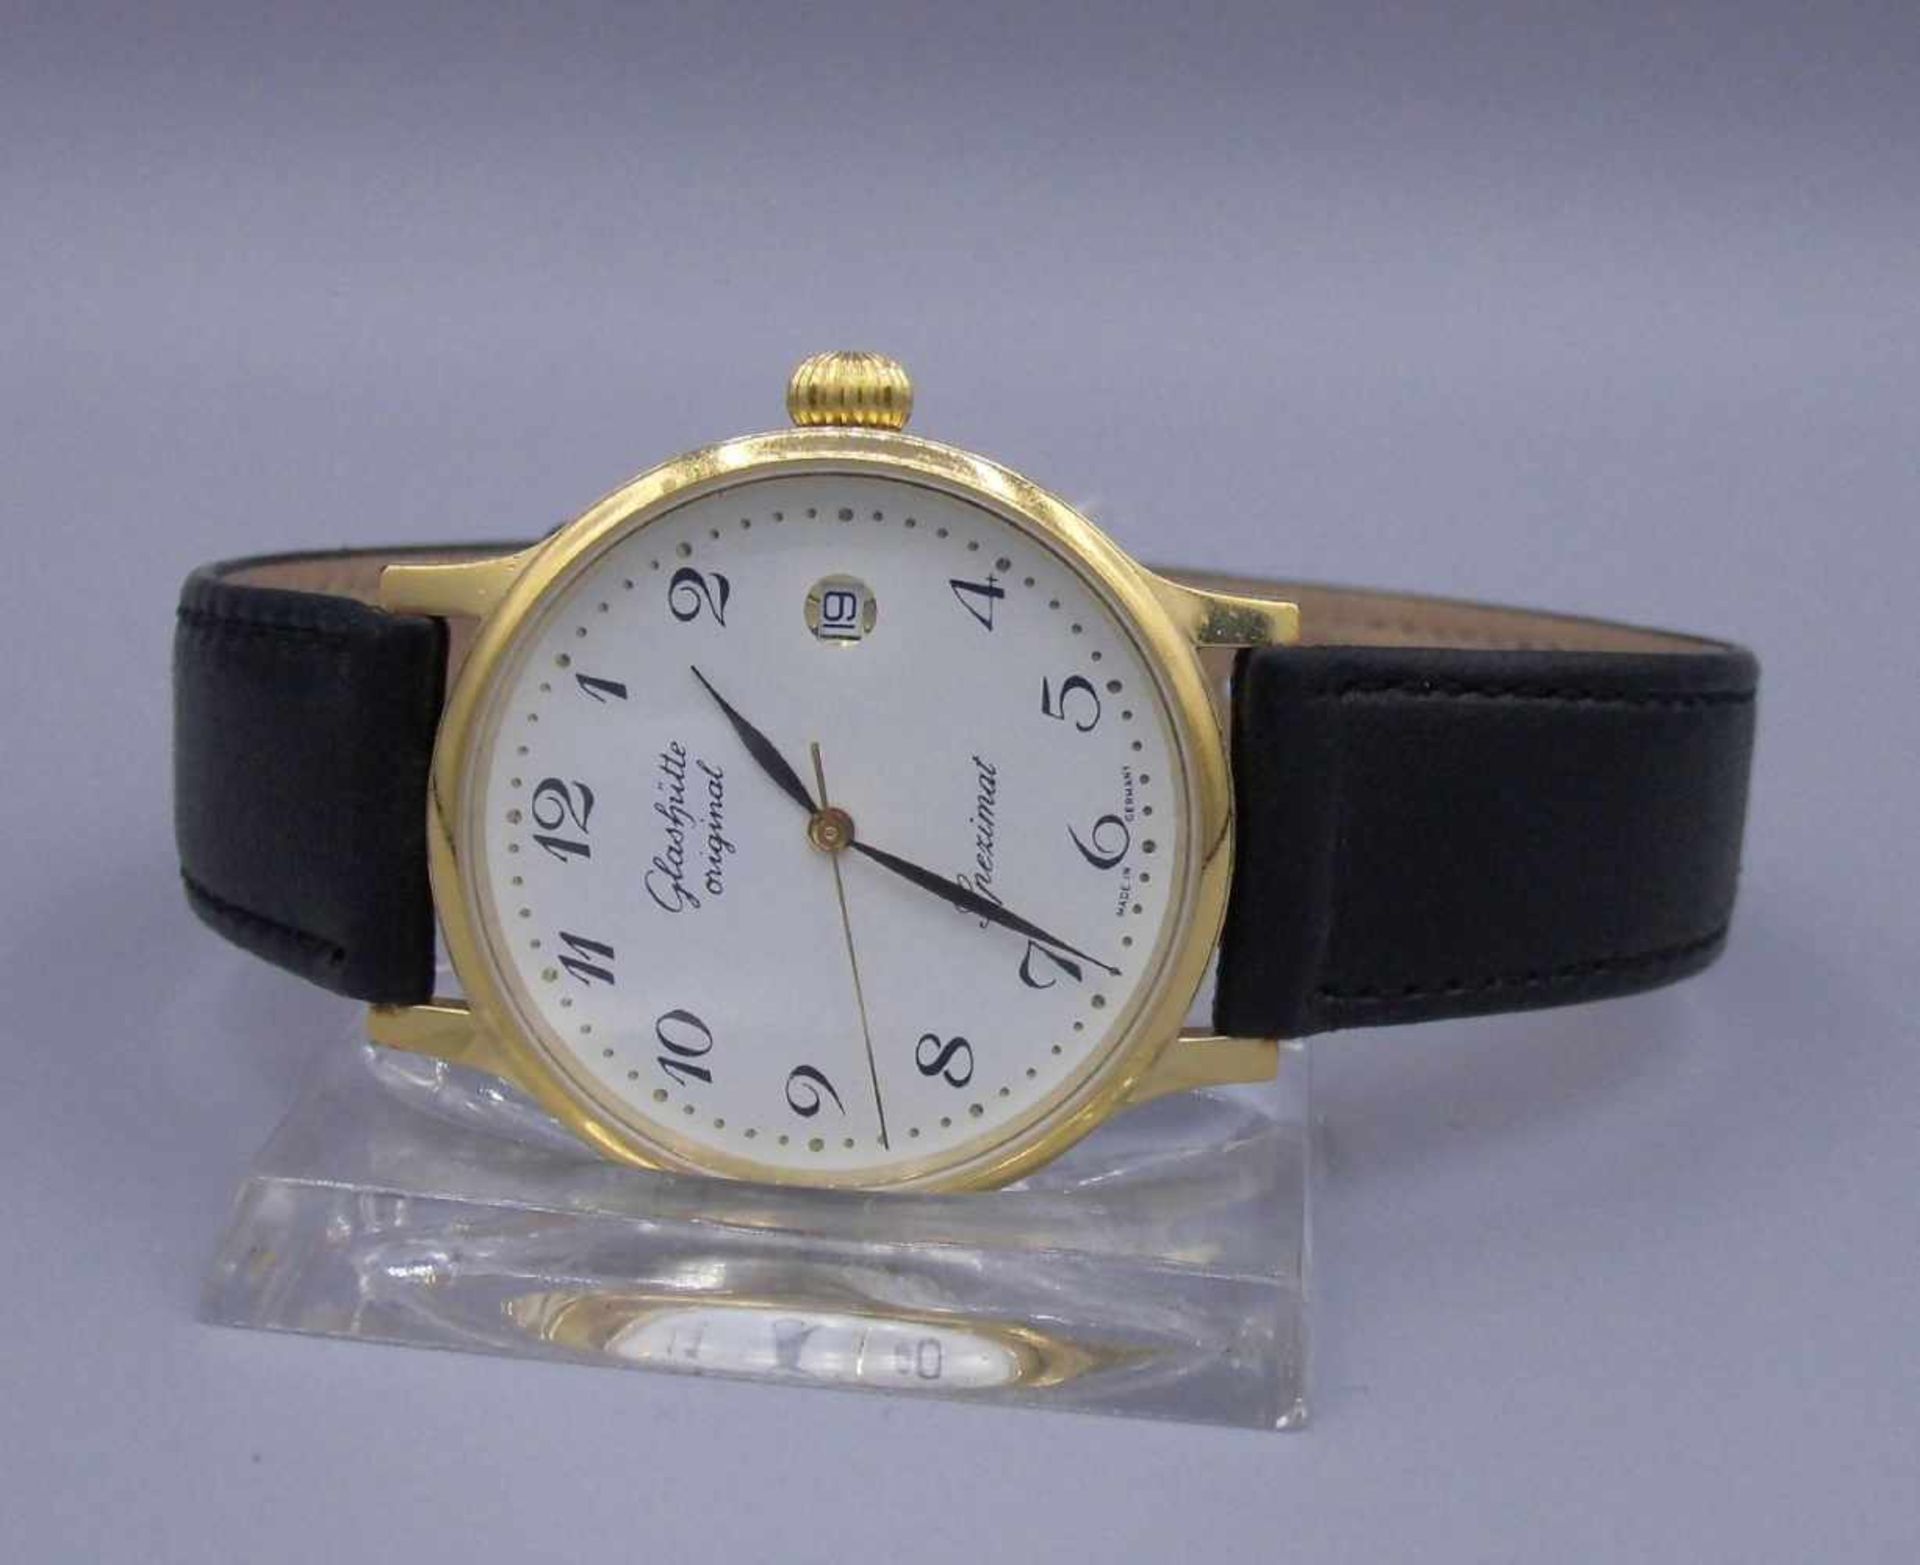 ARMBANDUHR / wristwatch, Automatik-Uhr, Manufaktur Glashütte Original / Glashütter Uhrenbetrieb